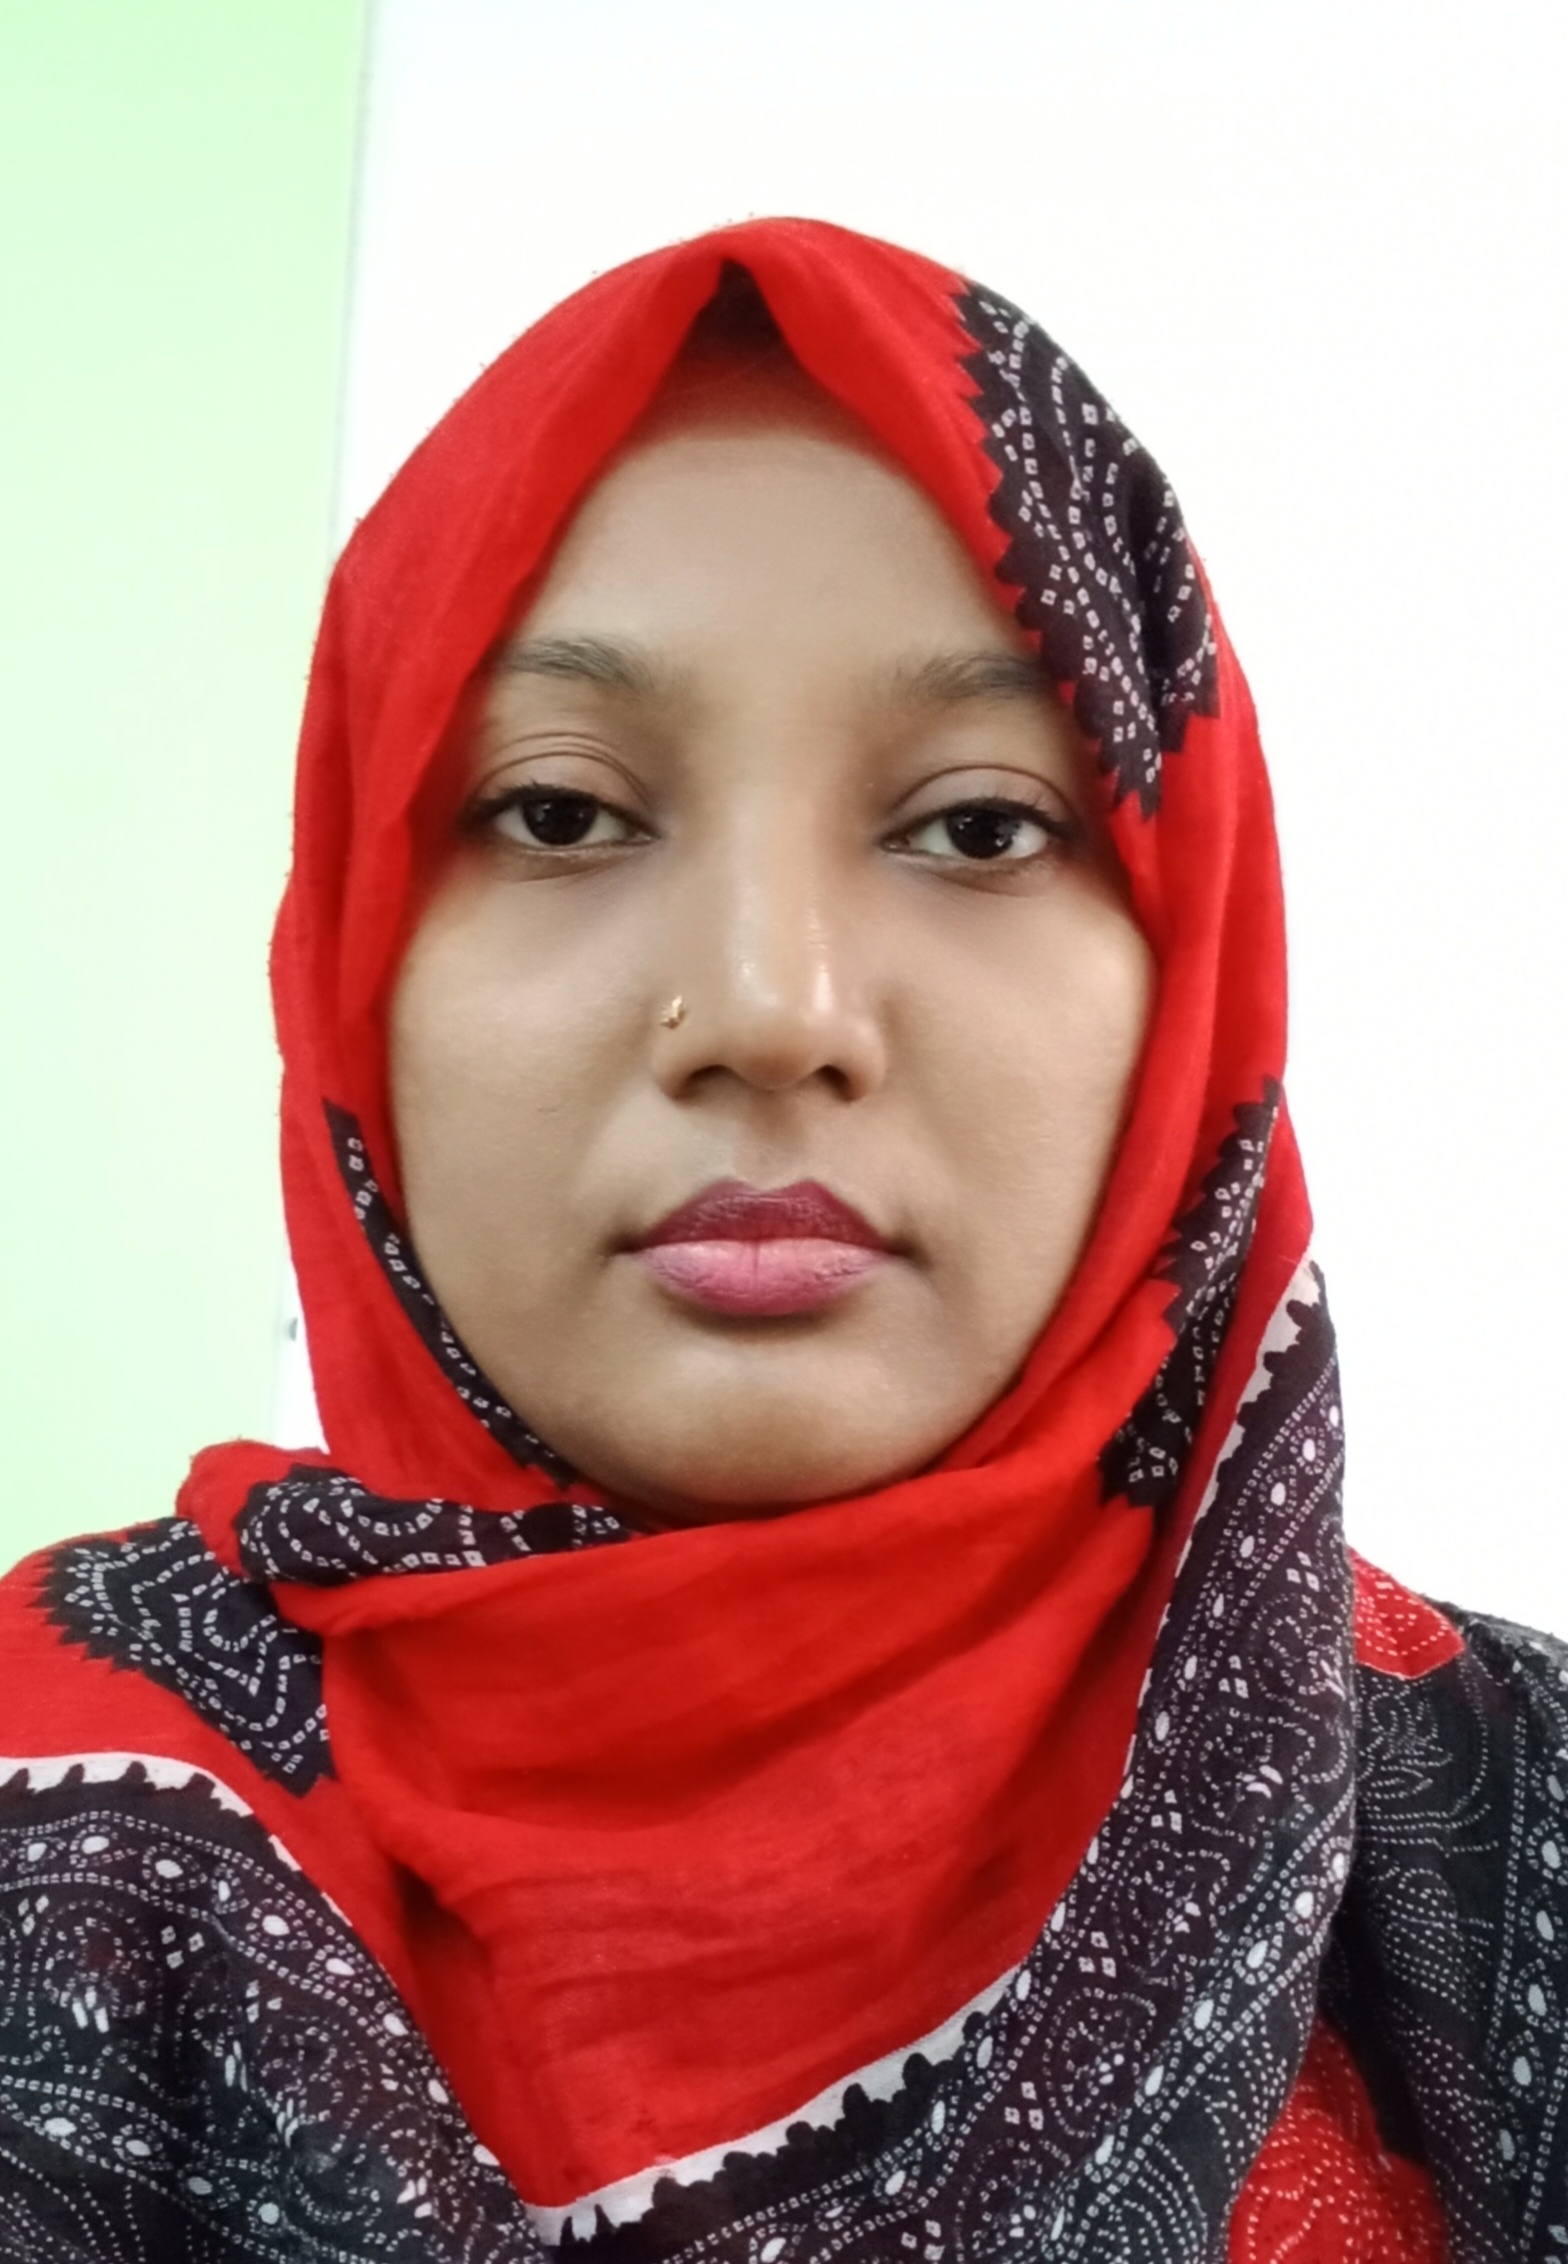 Dr. Sultana Tarannum Nizamy